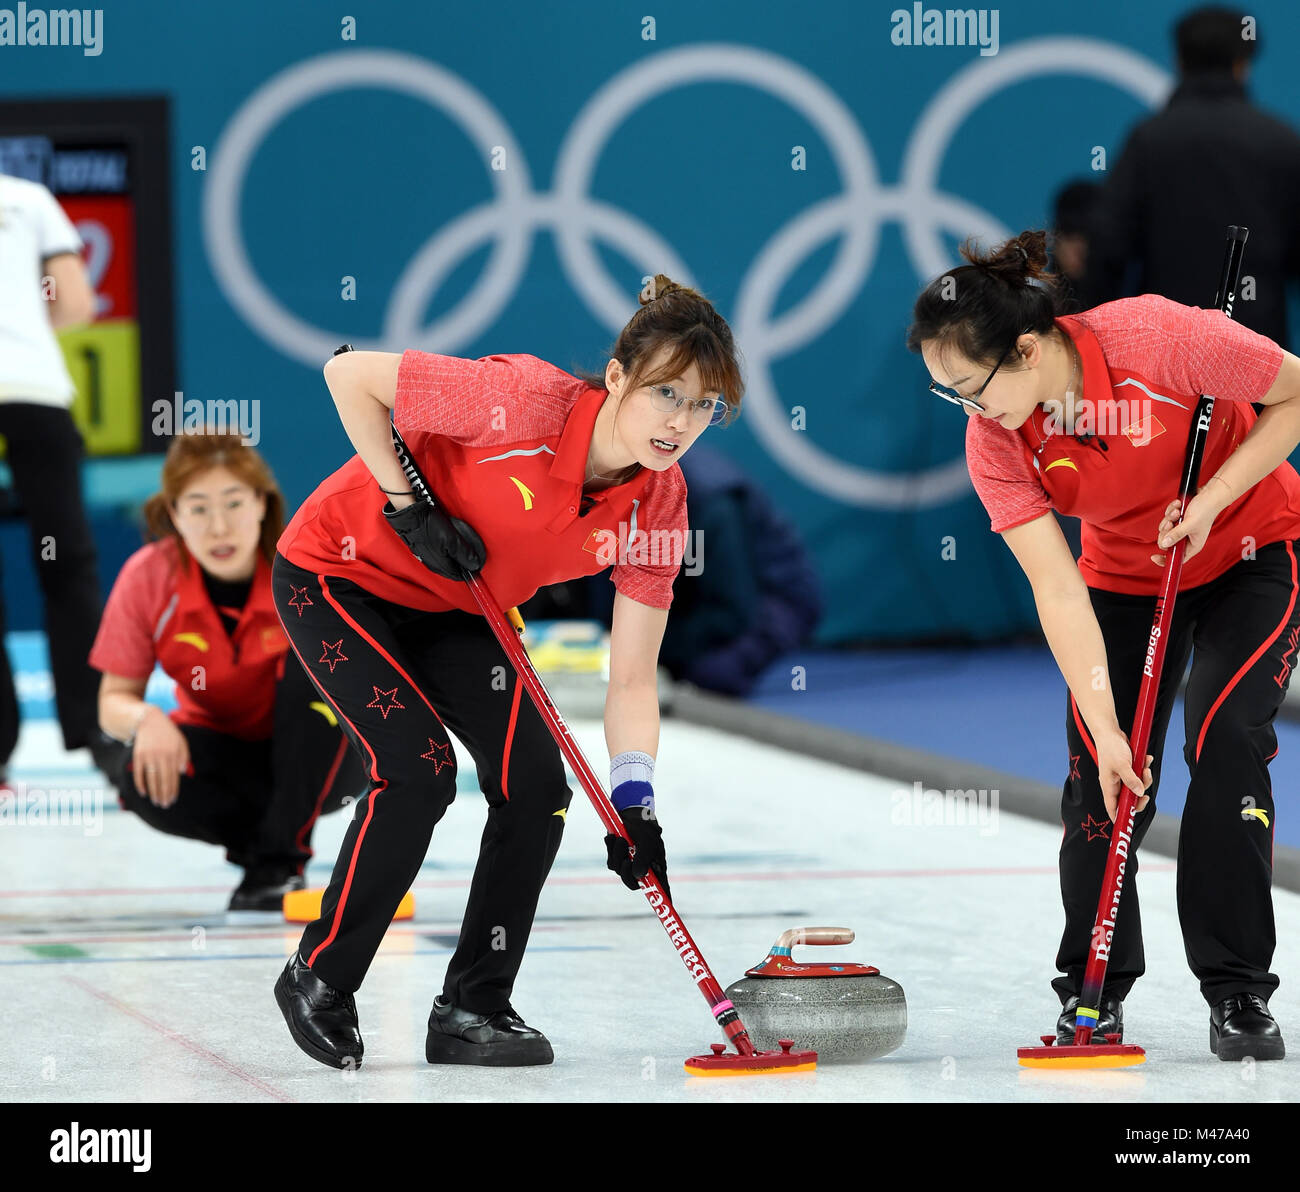 Pyeongchang, Corée du Sud. Feb 15, 2018. Ma Jingyi (L, à l'avant) et Zhou Yan (R, à l'avant) de la Chine en concurrence au cours de l'événement de la ronde des femmes contre les athlètes olympiques de curling de la Russie à l'occasion des Jeux Olympiques d'hiver de PyeongChang 2018 au Centre de curling Gangneung, Gangneung, Corée du Sud, le 15 février 2018. La Chine a perdu 6-7. Credit : Ma Ping/Xinhua/Alamy Live News Banque D'Images